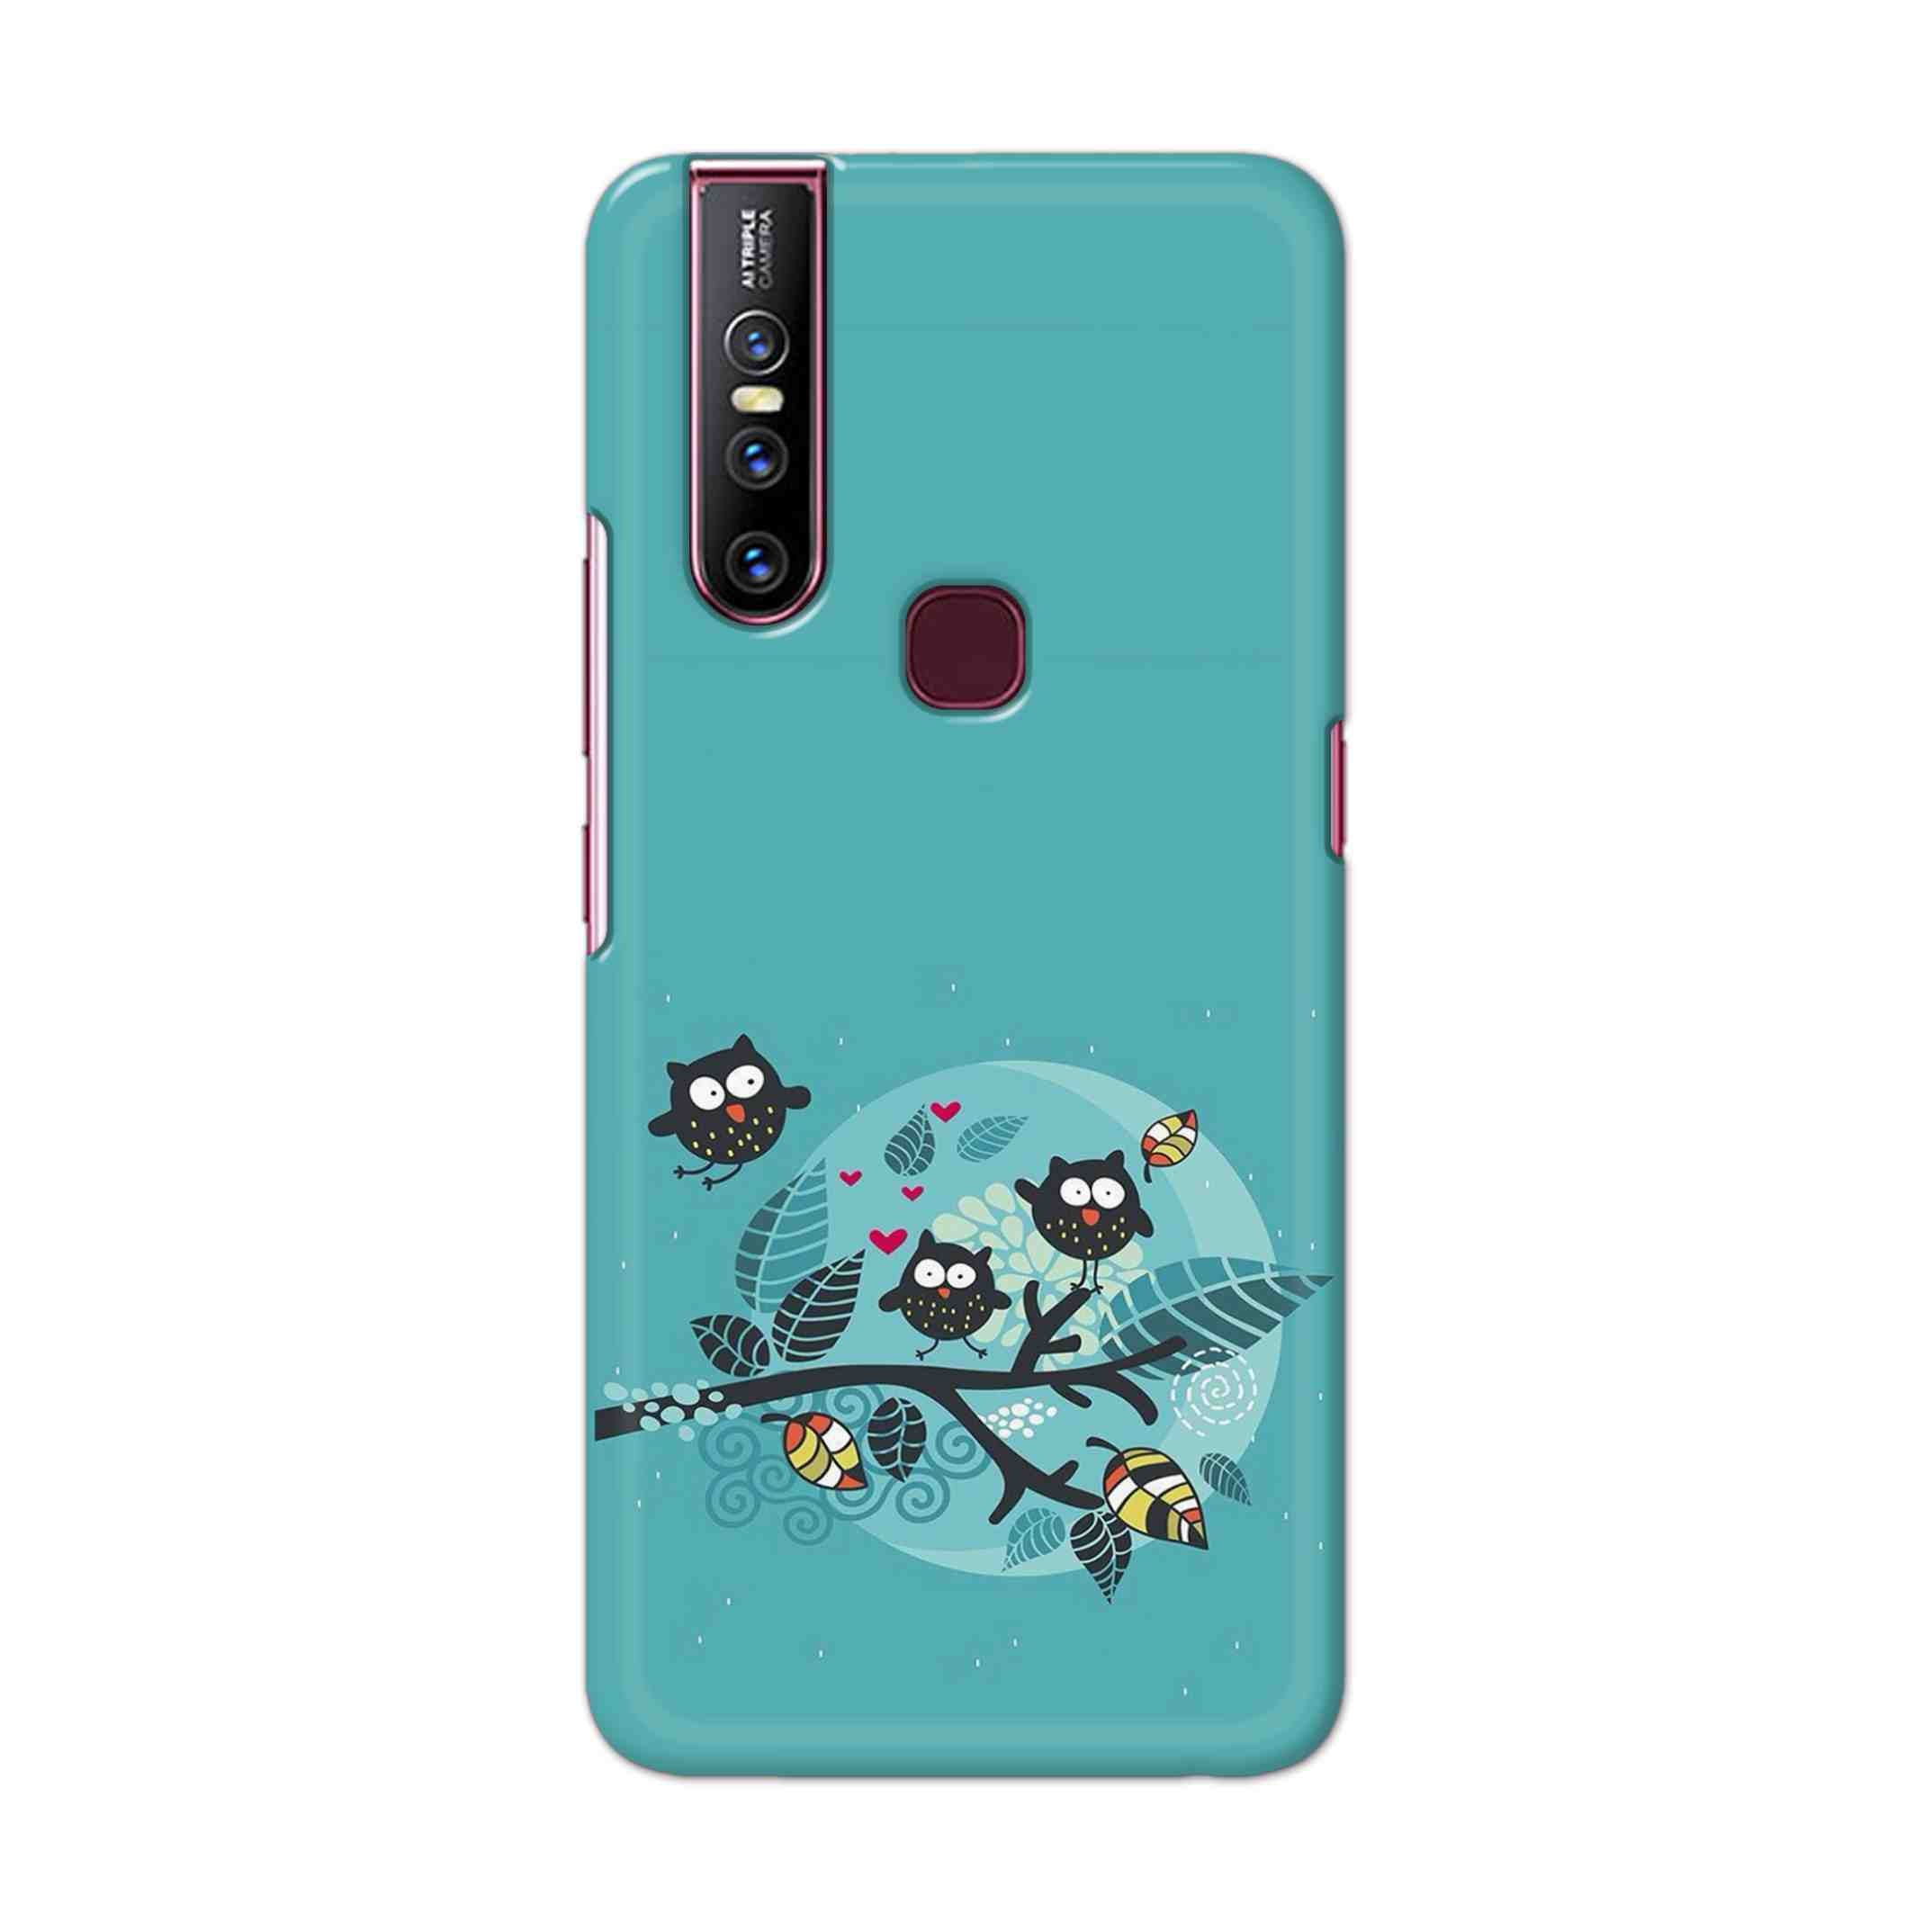 Buy Owl Hard Back Mobile Phone Case Cover For Vivo V15 Online